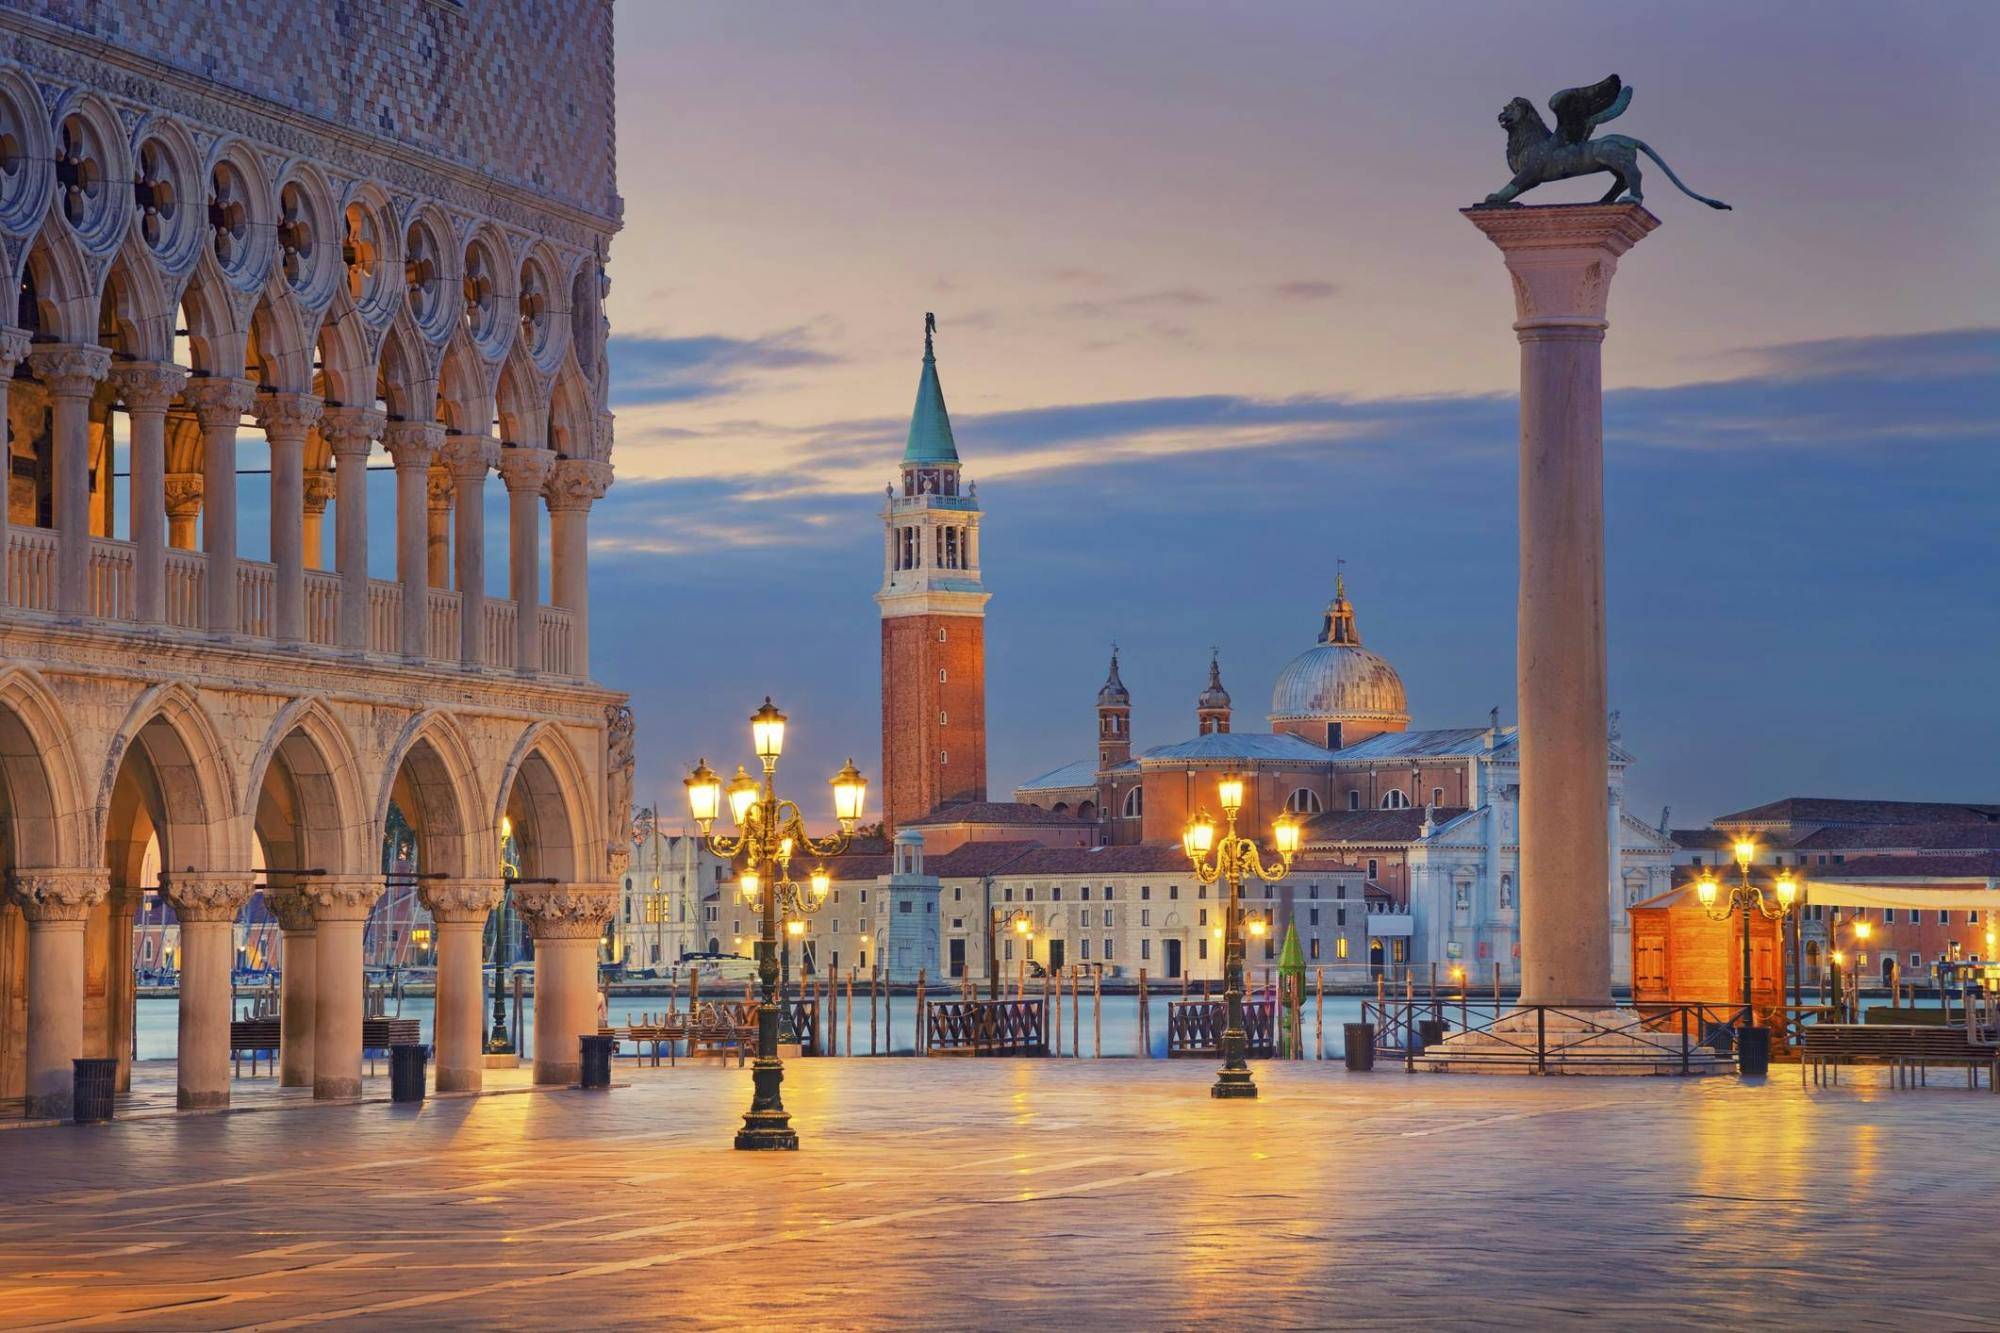 Audiotour della città di Venezia e biglietto per la Basilica di San Marco con audioguida